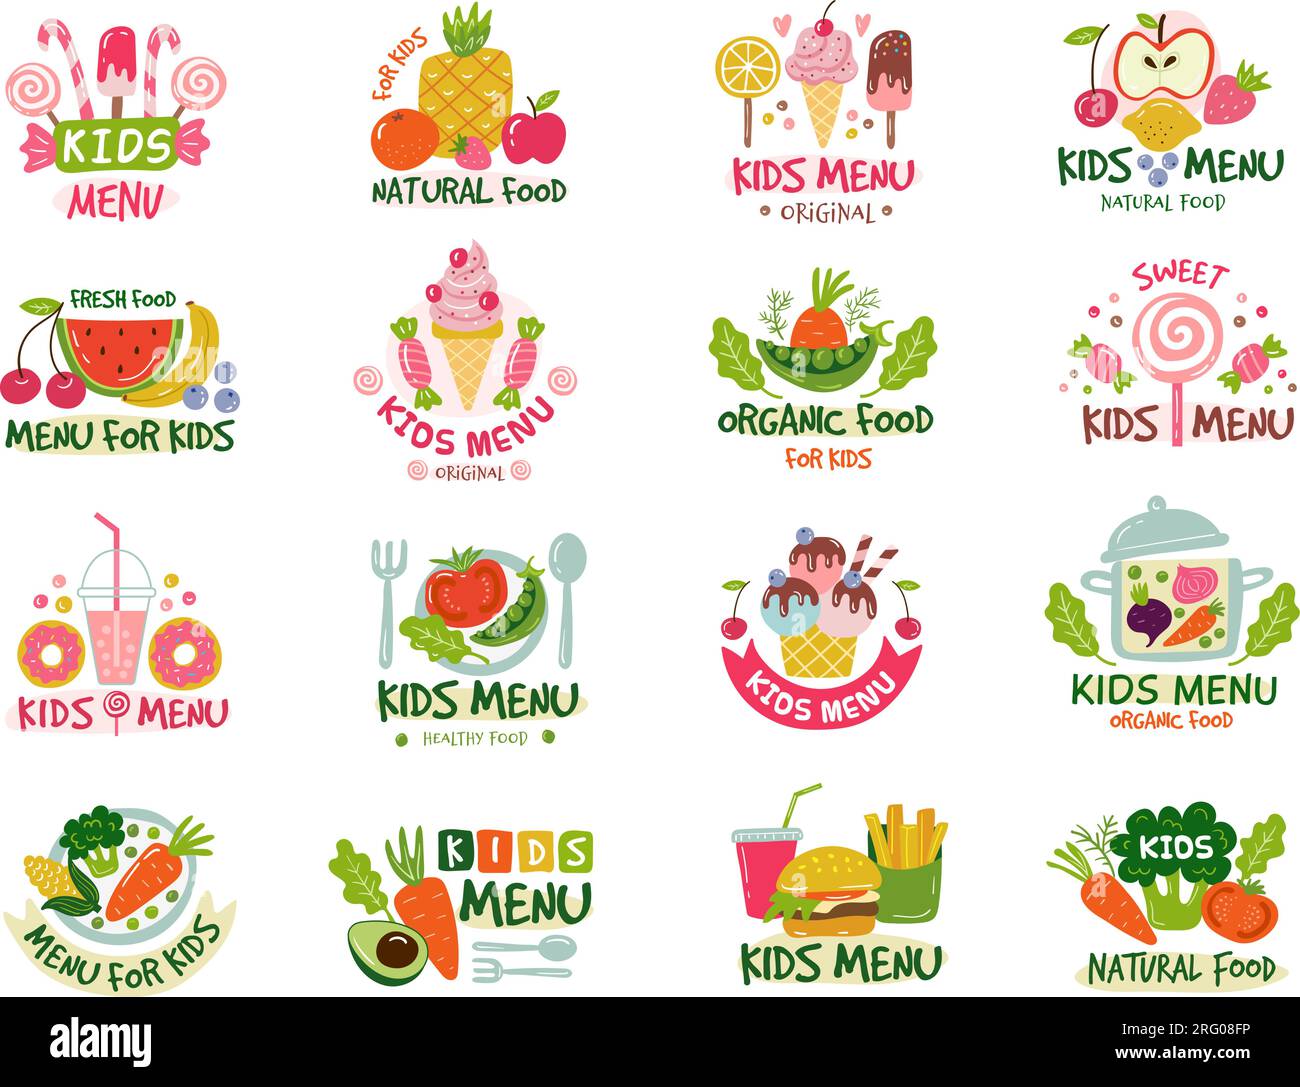 Logo für Kindermenü. Emblem für Kinderrestaurants mit farbigem Text und stilisierten Bildern verschiedener Produkte neuere Vektorbilder Stock Vektor